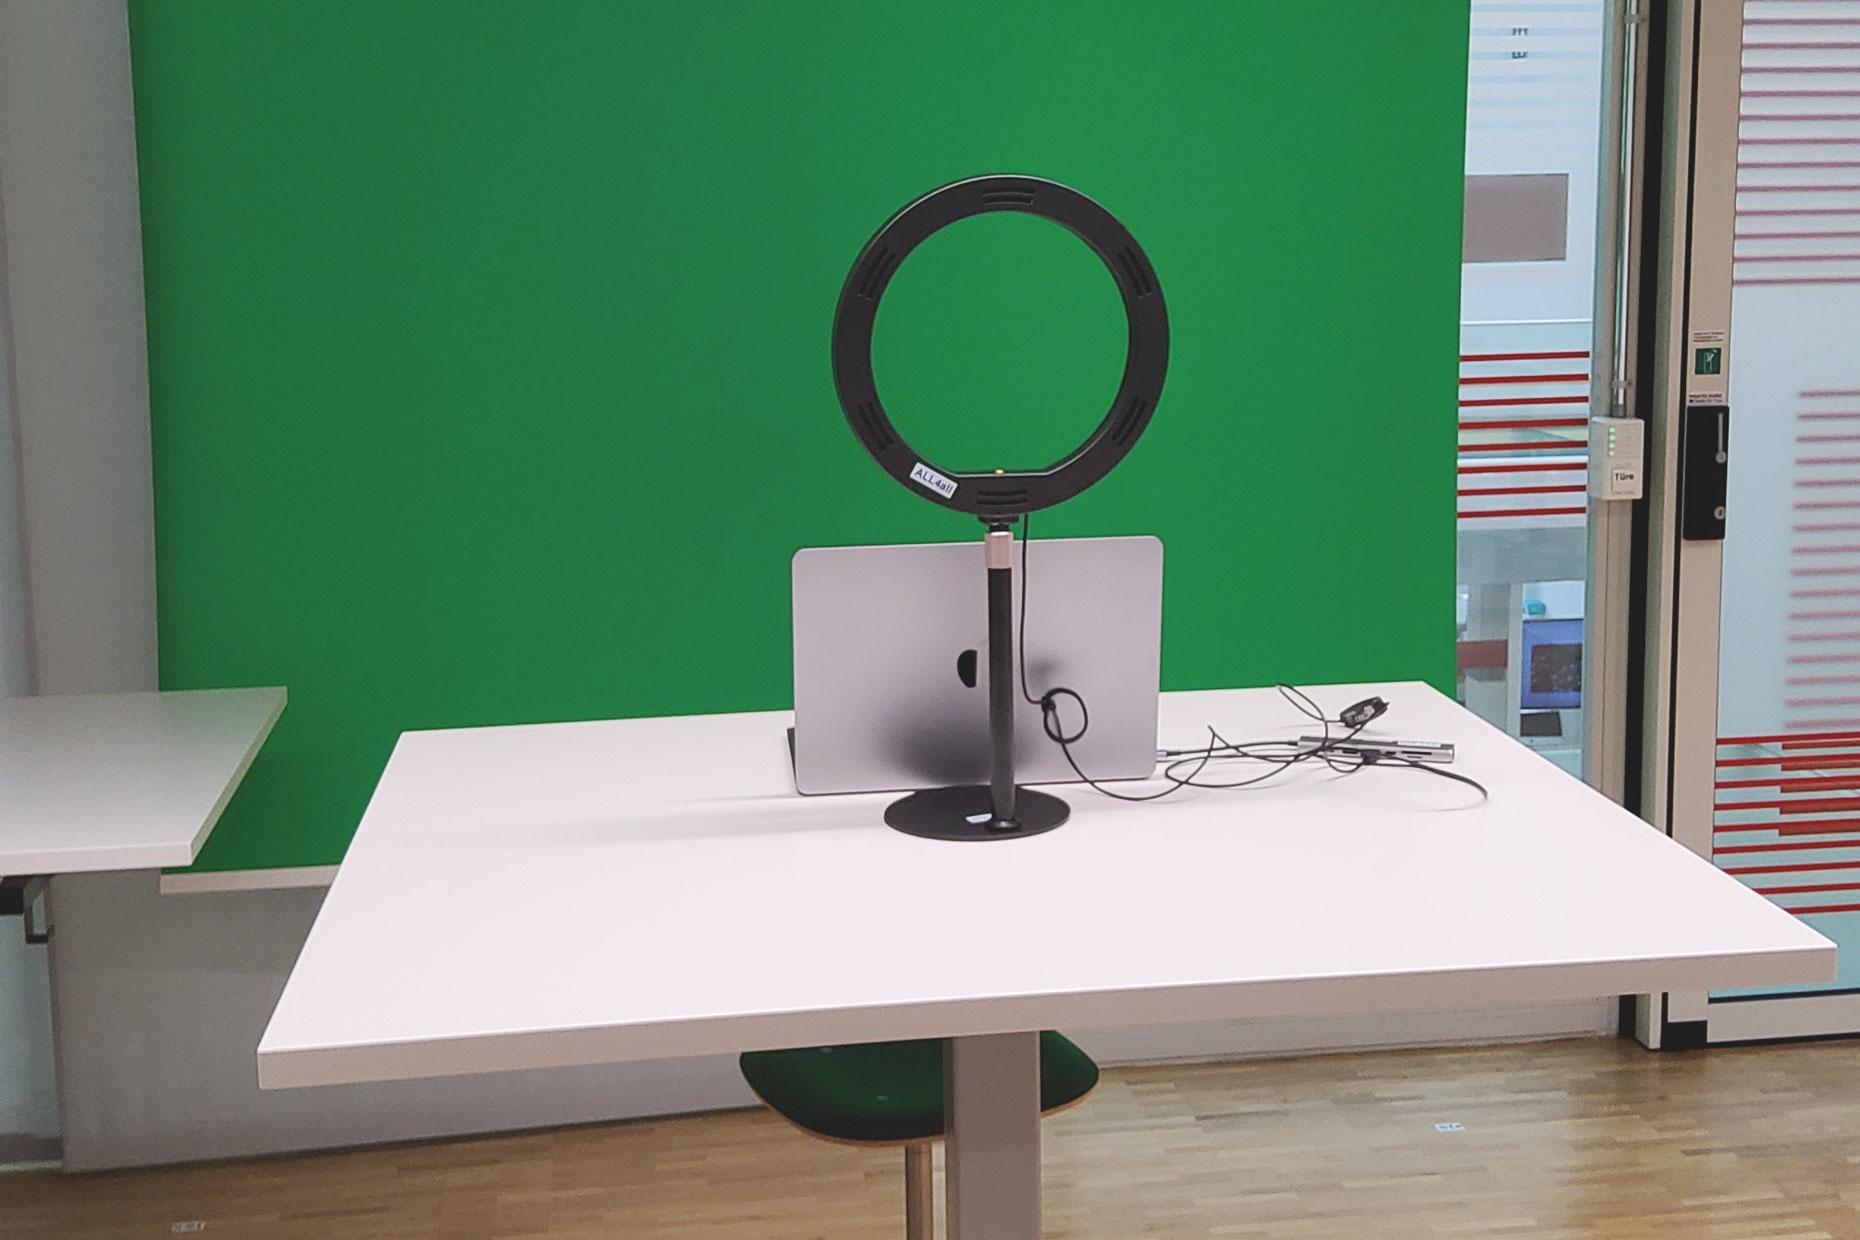 Foto eines Greenscreens mit davor aufgestelltem Tisch auf dem ein Laptop und eine Ringleuchte steht.